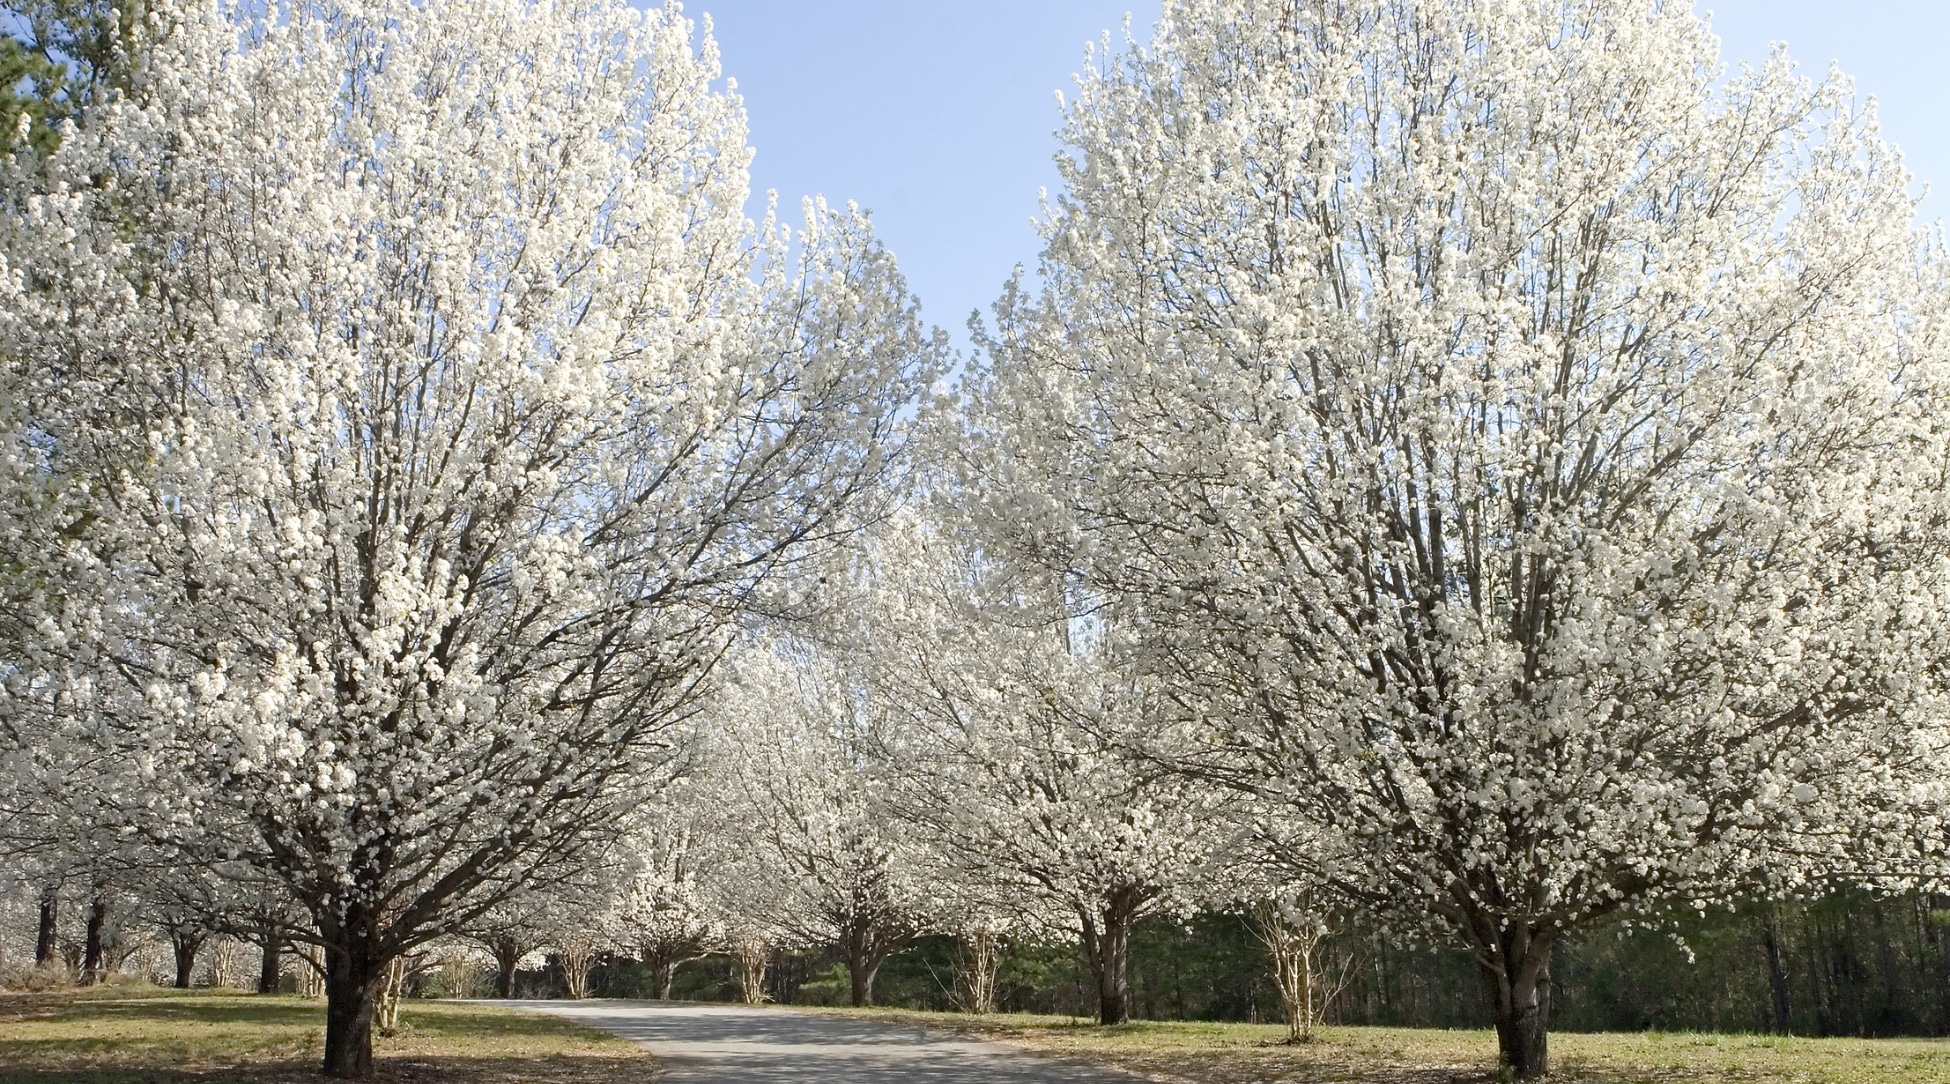 A lo largo del camino, varios árboles majestuosos se exhiben por completo, sus ramas se extienden anchas y altas.  Estos árboles son abundantes con innumerables flores blancas que forman un impresionante contraste con su corteza oscura. 